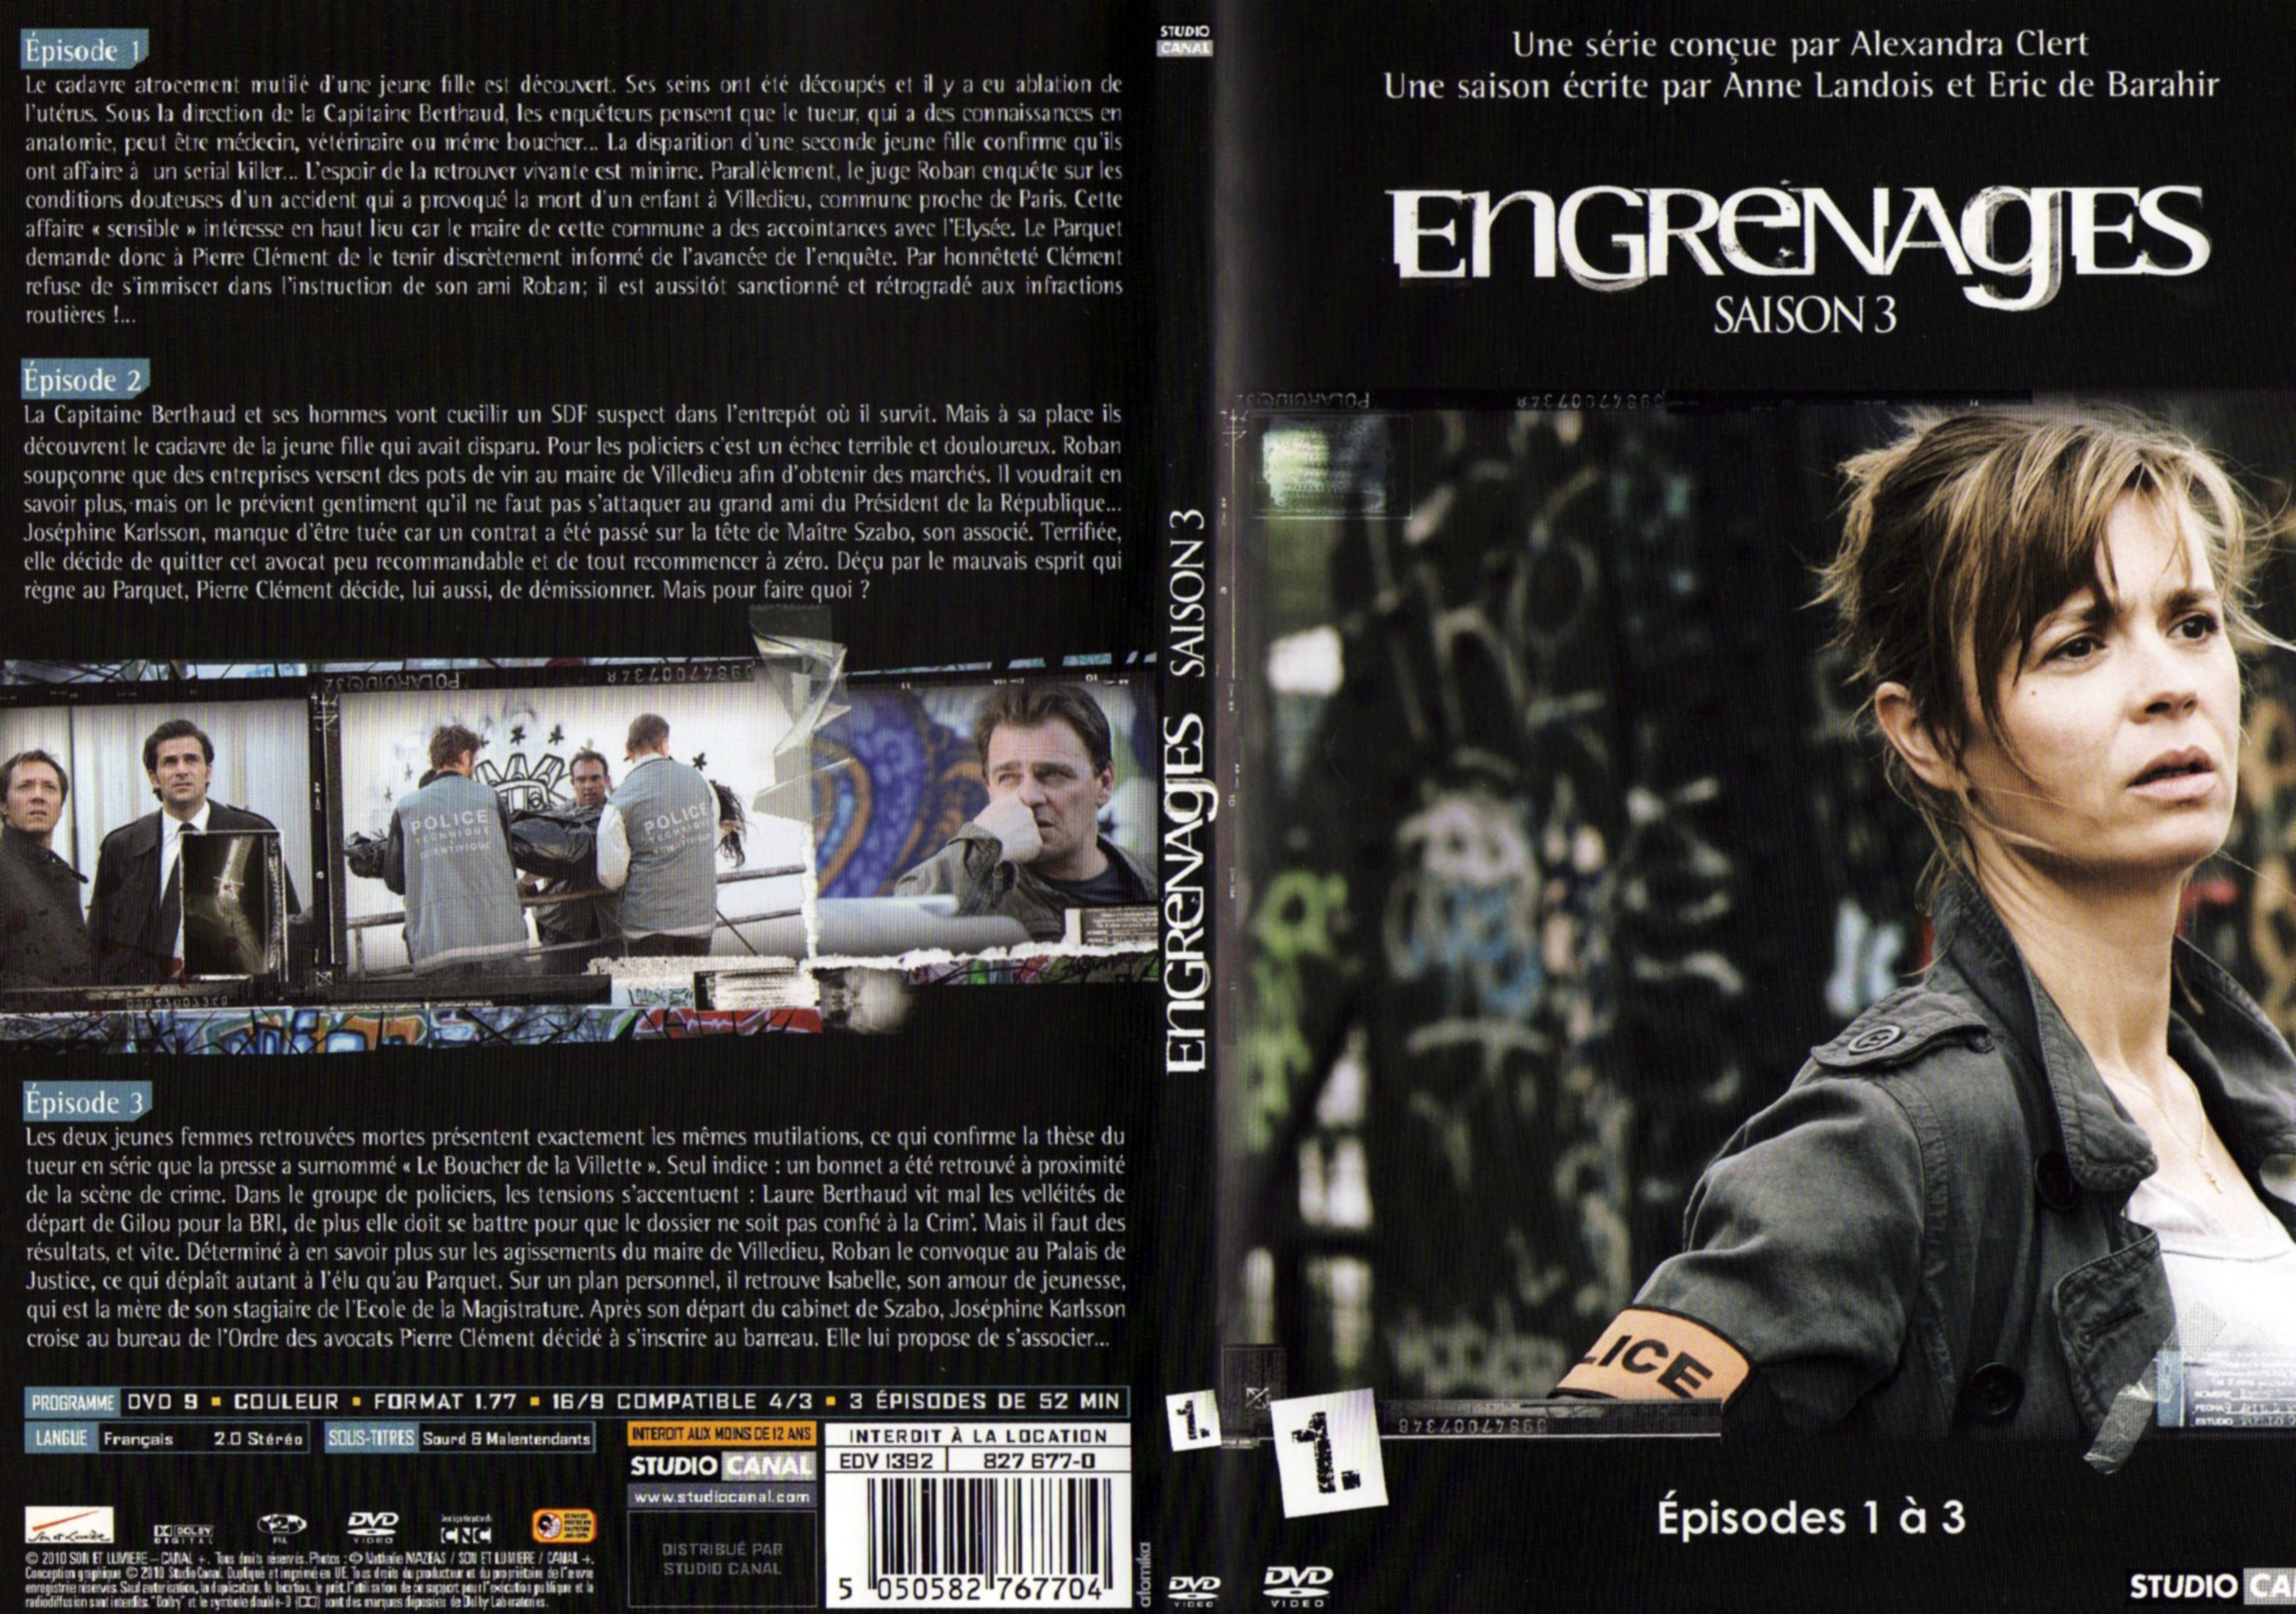 Jaquette DVD Engrenages Saison 3 DVD 1